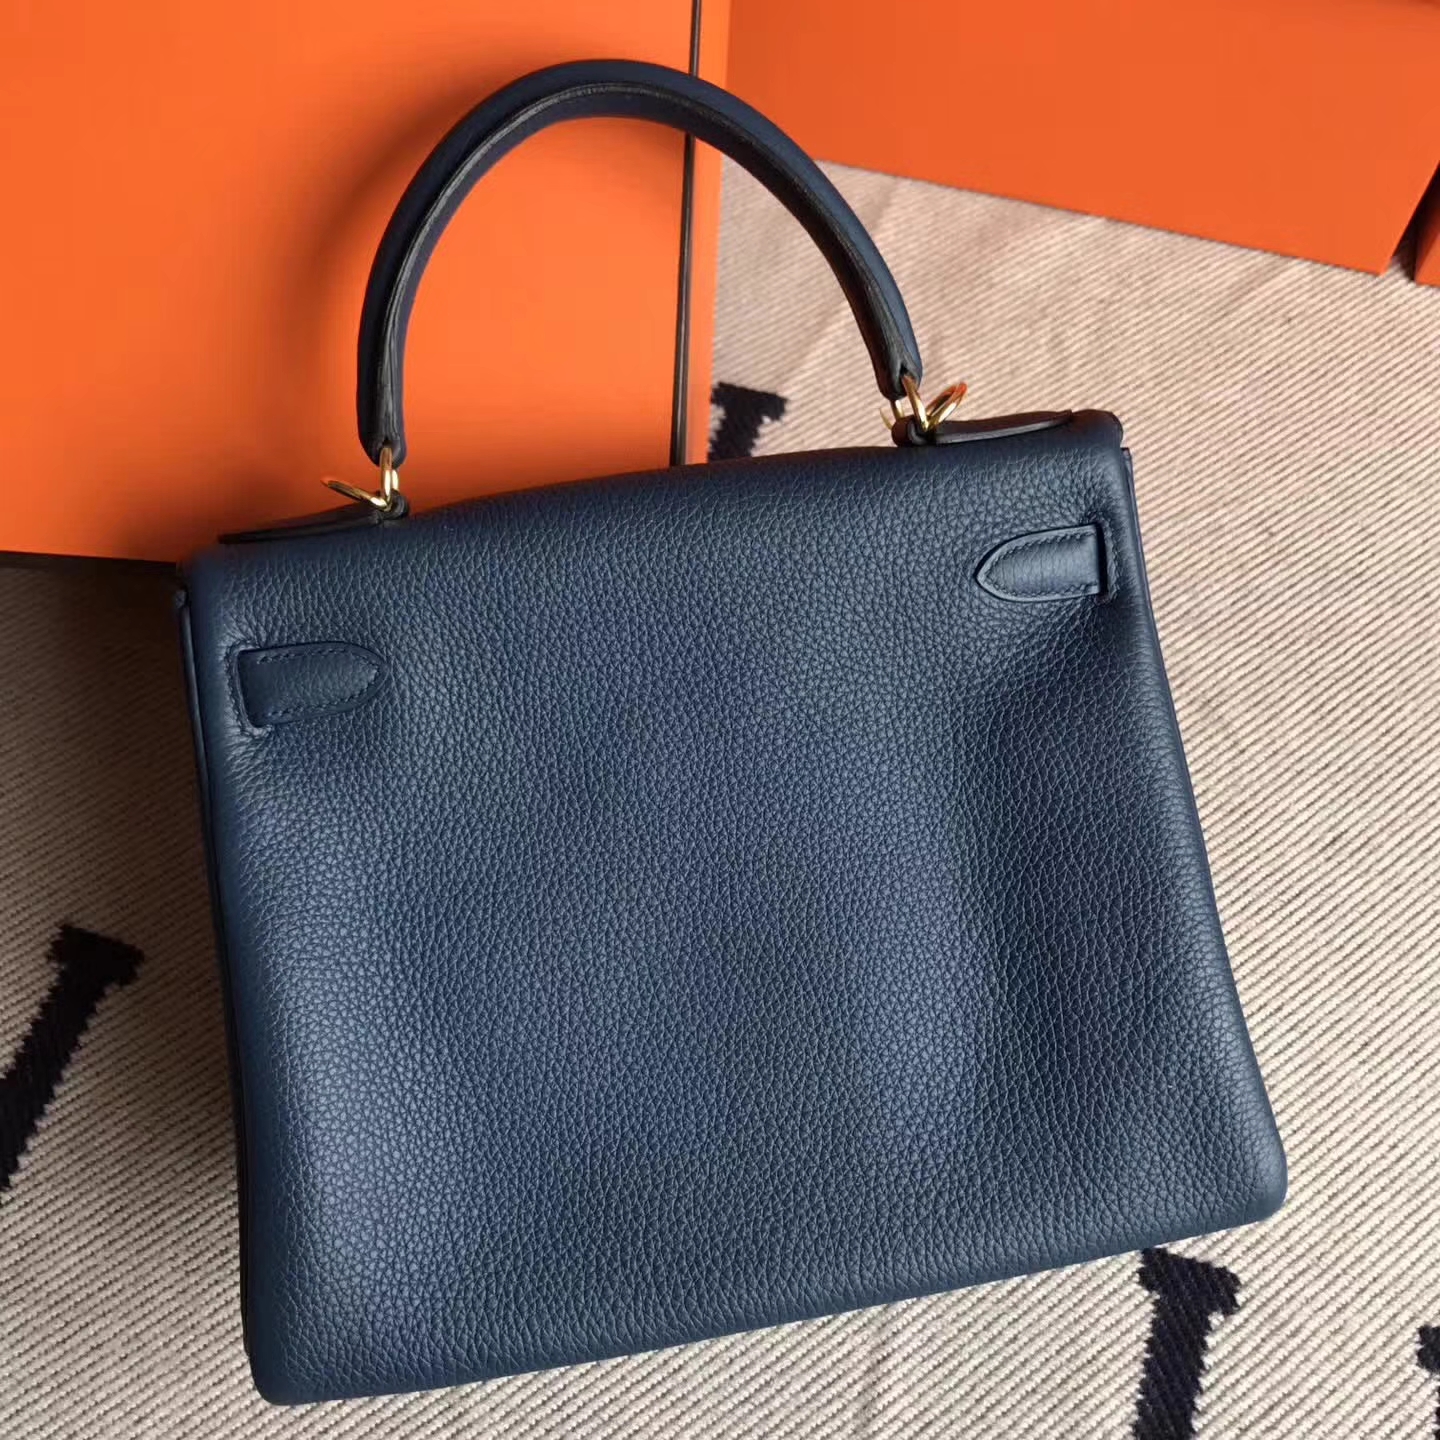 On Sale Hermes Duck Blue Togo Leather Retourne Kelly28cm Bag